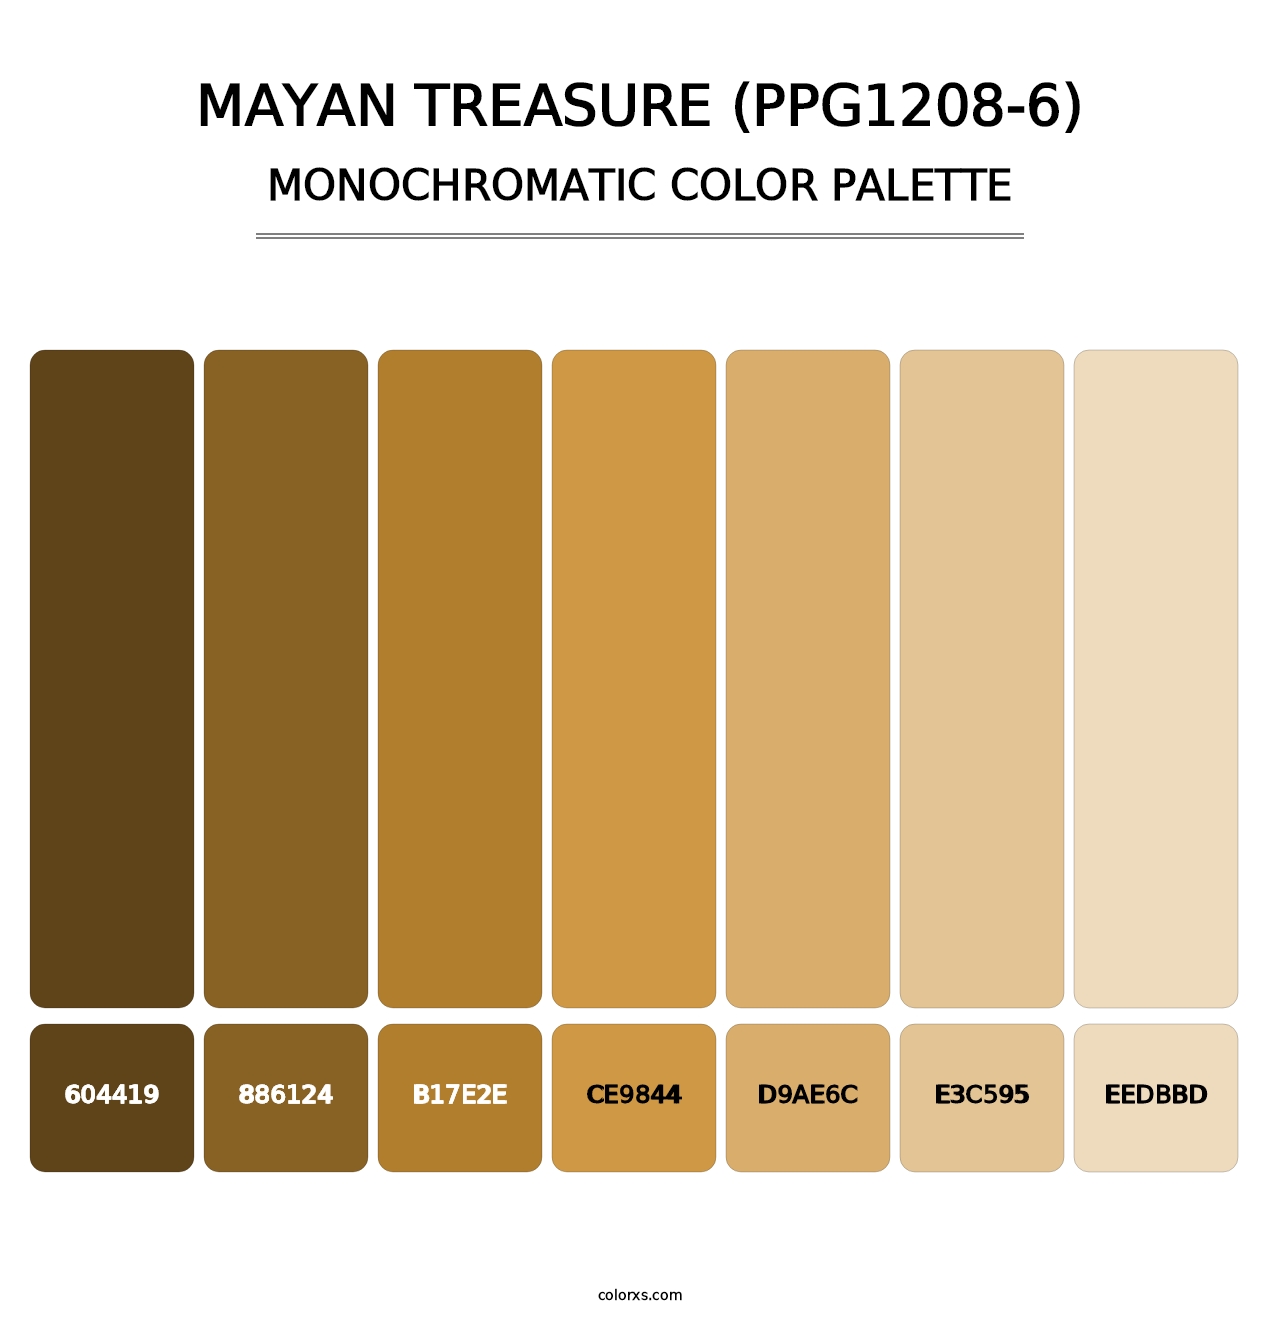 Mayan Treasure (PPG1208-6) - Monochromatic Color Palette